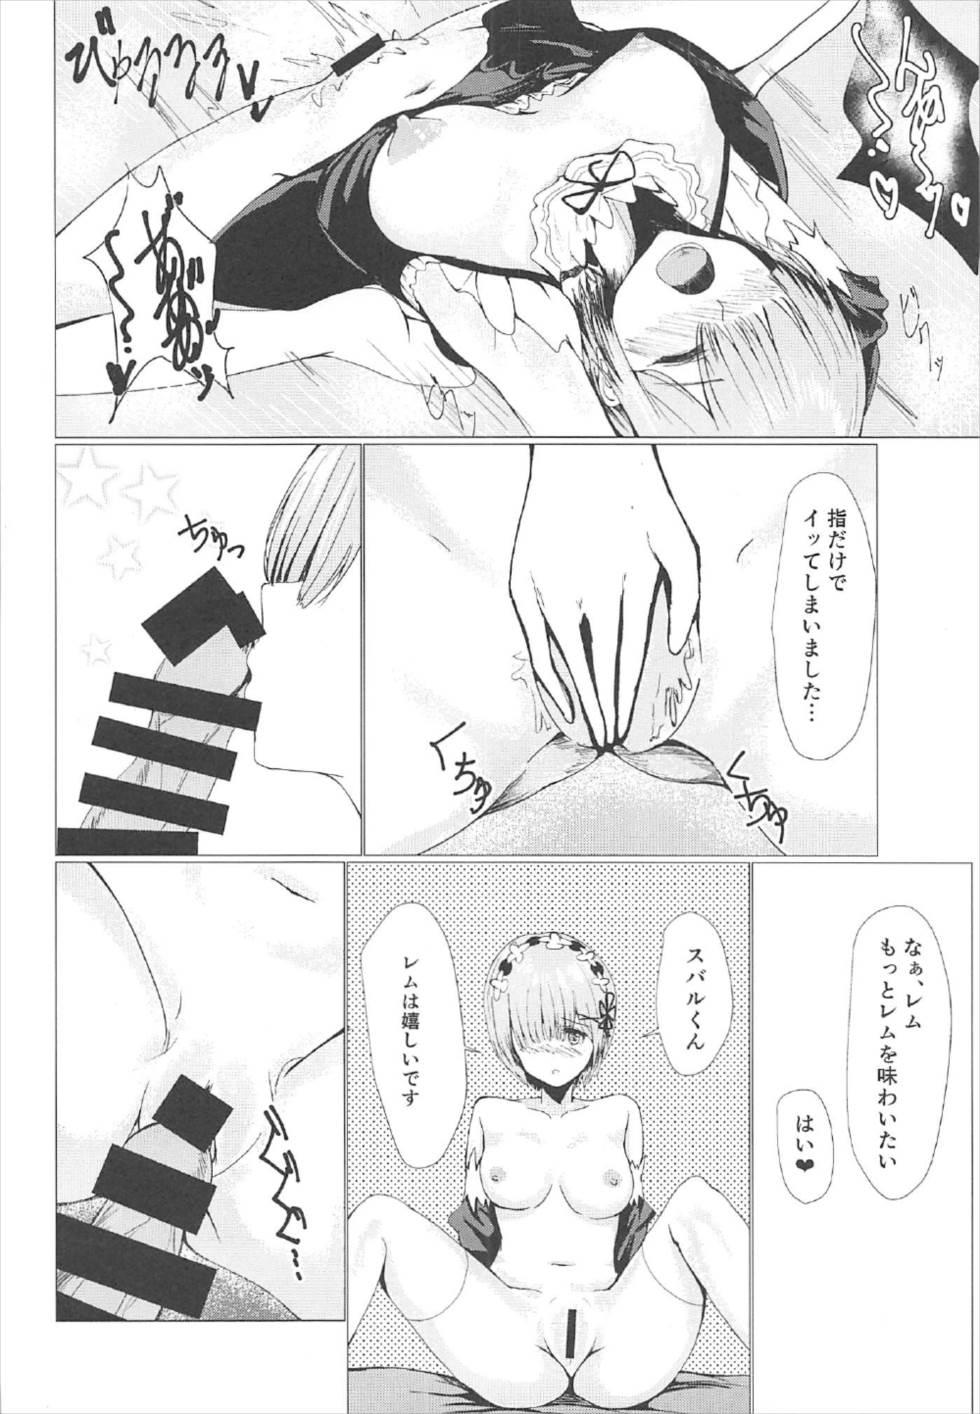 Penetration Rem no Jikan - Re zero kara hajimeru isekai seikatsu Party - Page 9